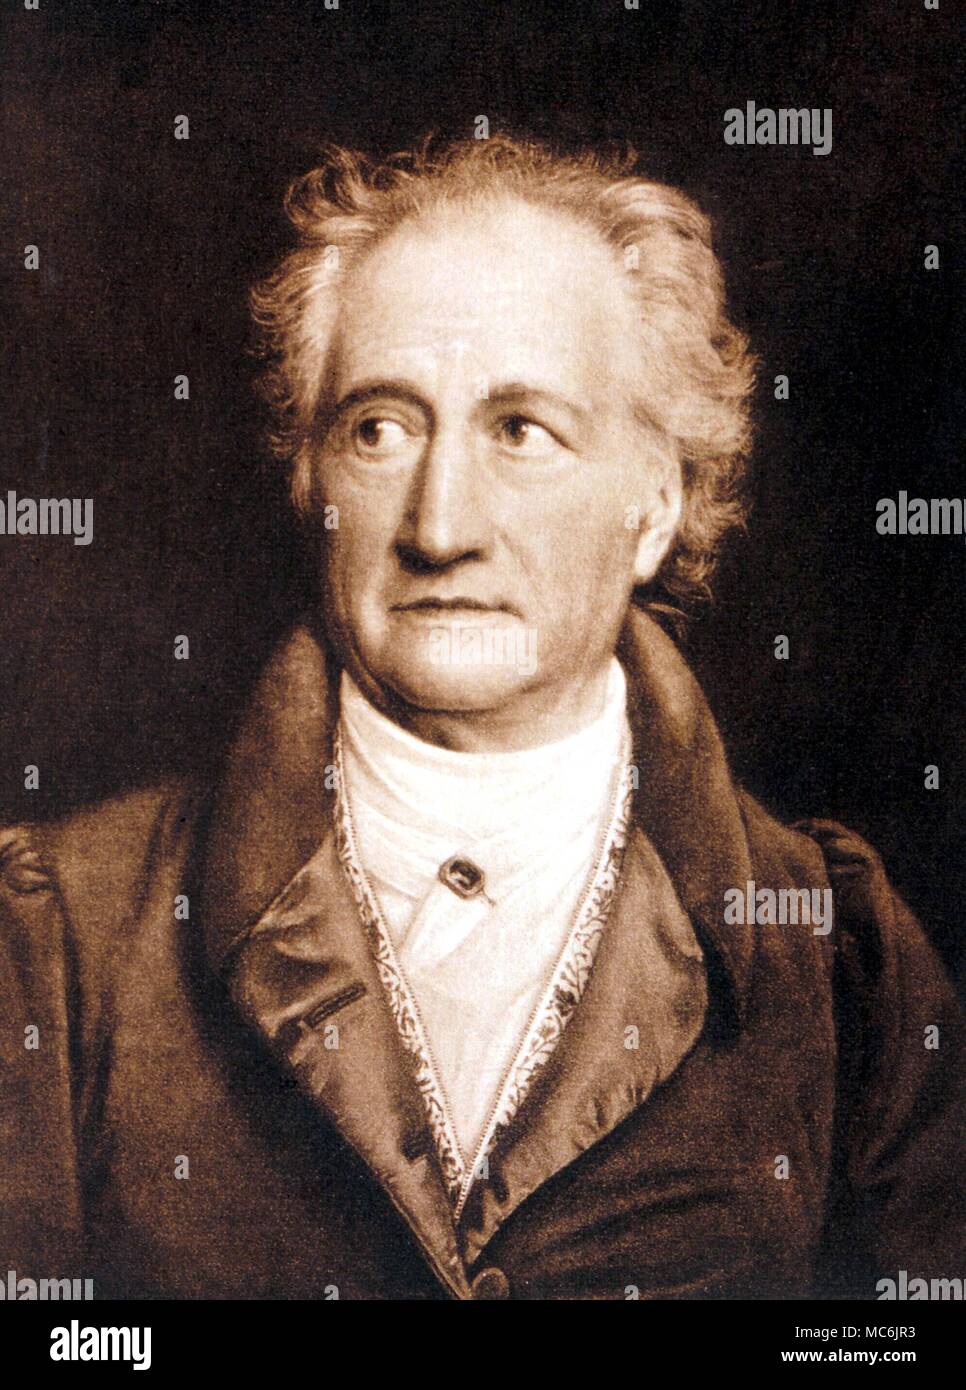 Gli occultisti - Goethe. Johann Wolfgang Goethe (Francoforte sul Meno 1749 - Weimar 1832). Autore di 'Faust' (parte uno 1808, parte due 1831), dei Rosacroce e teorico del colore. Incisione dal 1864 edizione del G H Lewis " La vita di Goethe" Foto Stock